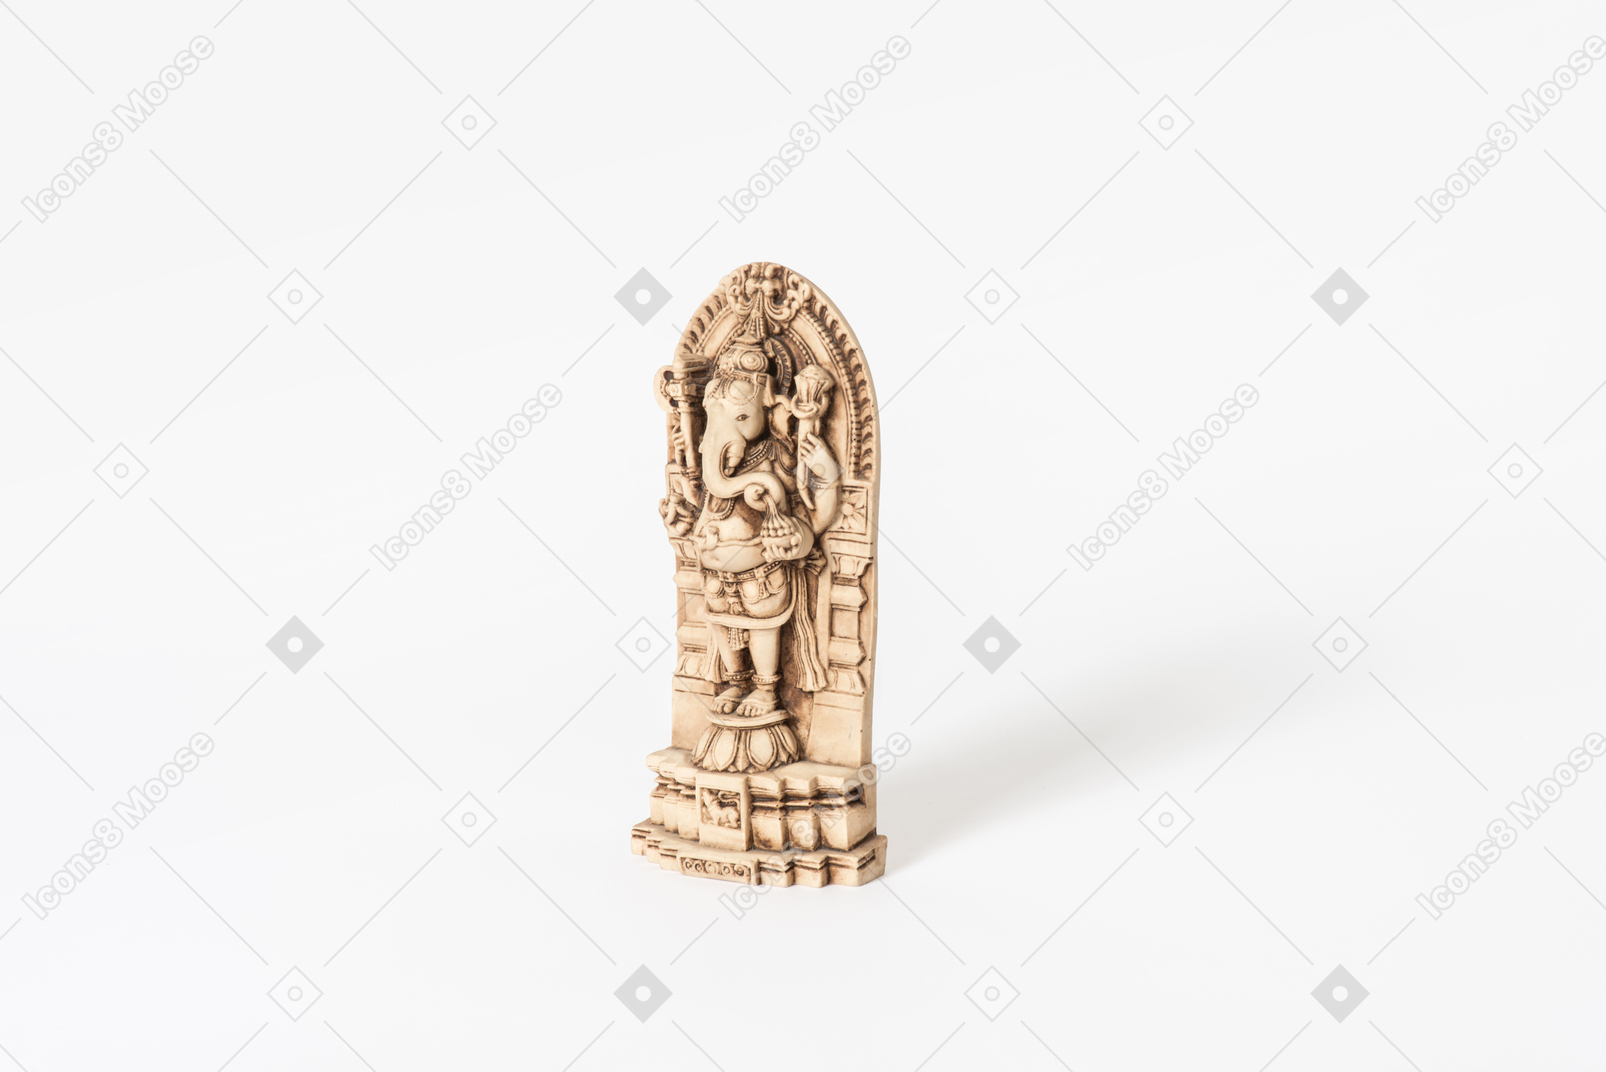 Ganesh the elephant god on white background